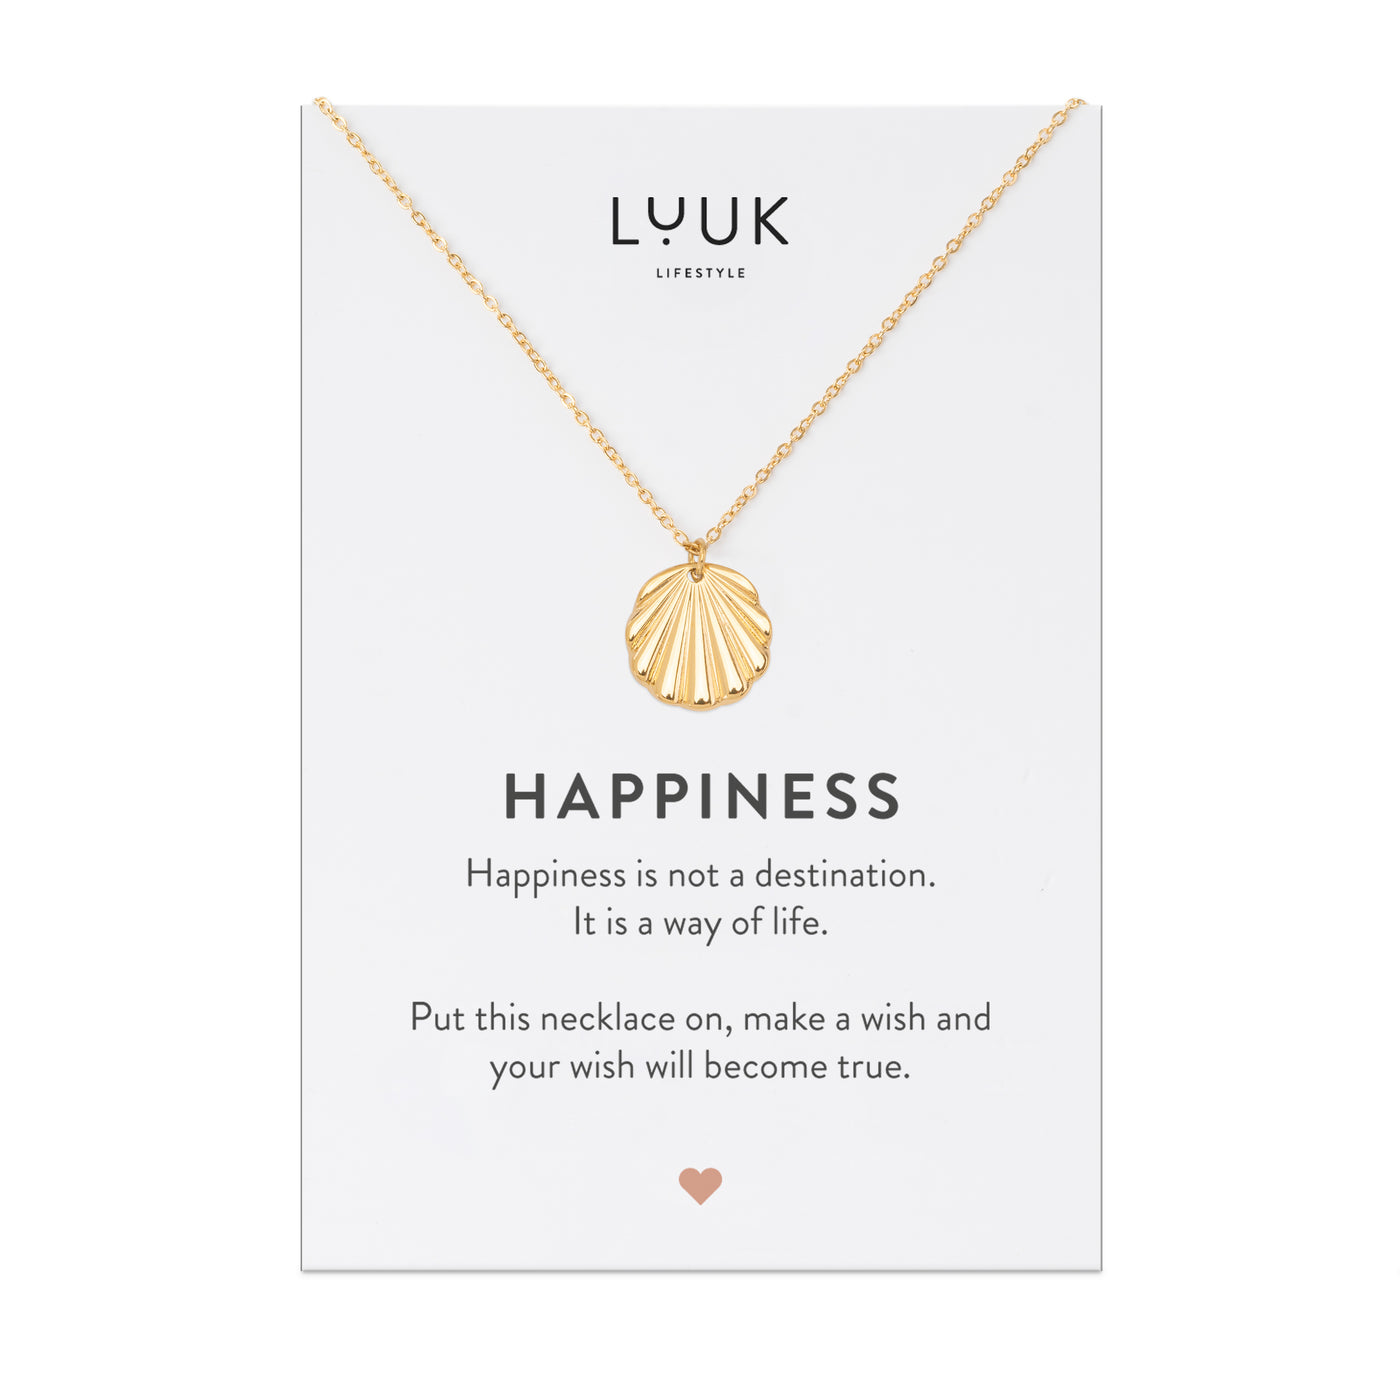 Goldene Kette mit Muschel Anhänger aus Edelstahl auf Happiness Spruchkarte von der Marke Luuk Lifestyle 